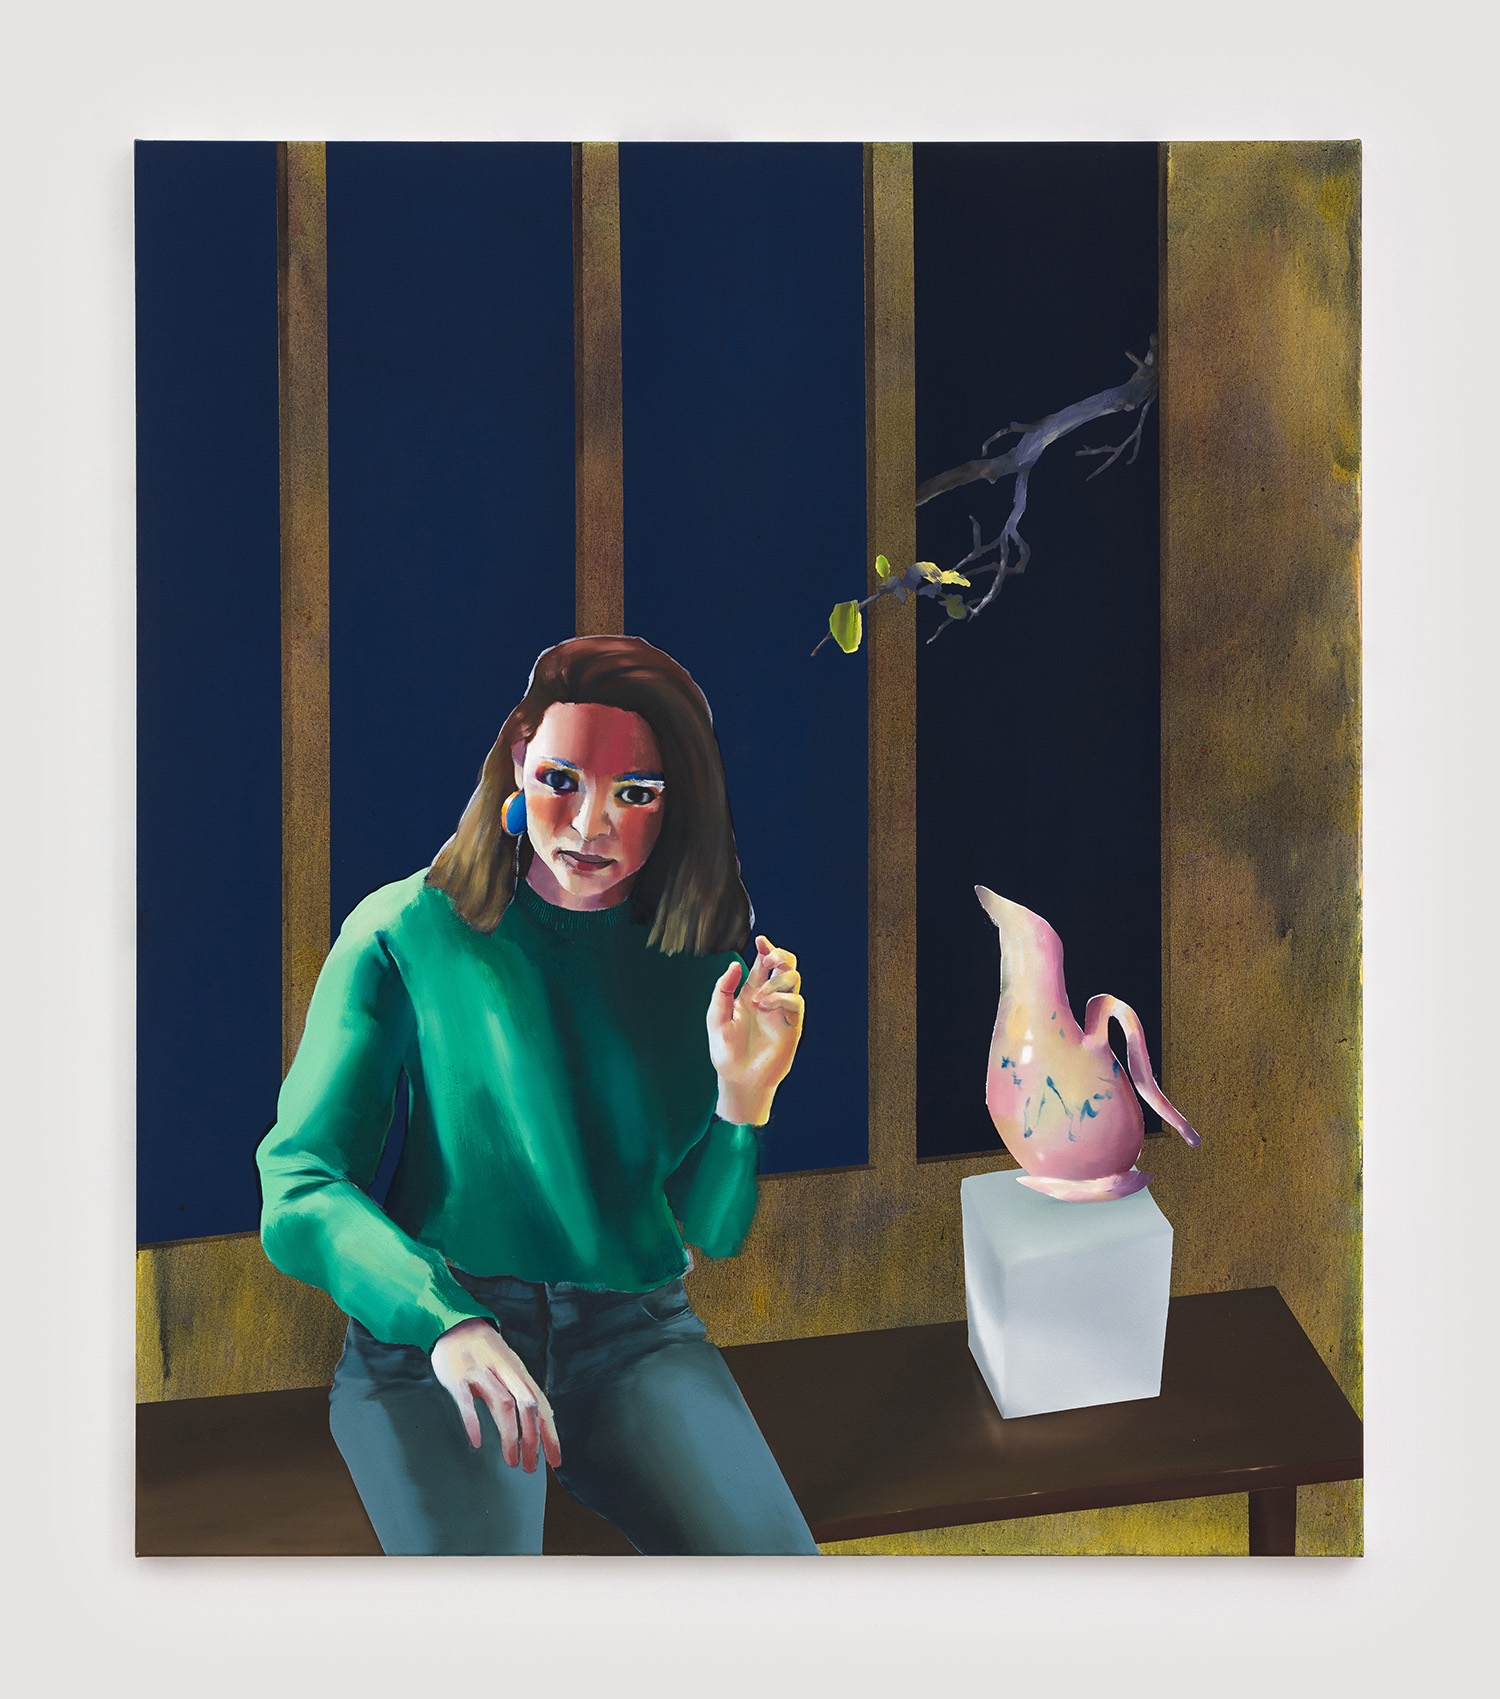 Ellen Akimoto, The Open Window, 2021, acrylic on canvas, 150 x 130 cm, 59 x 51 1/8 in